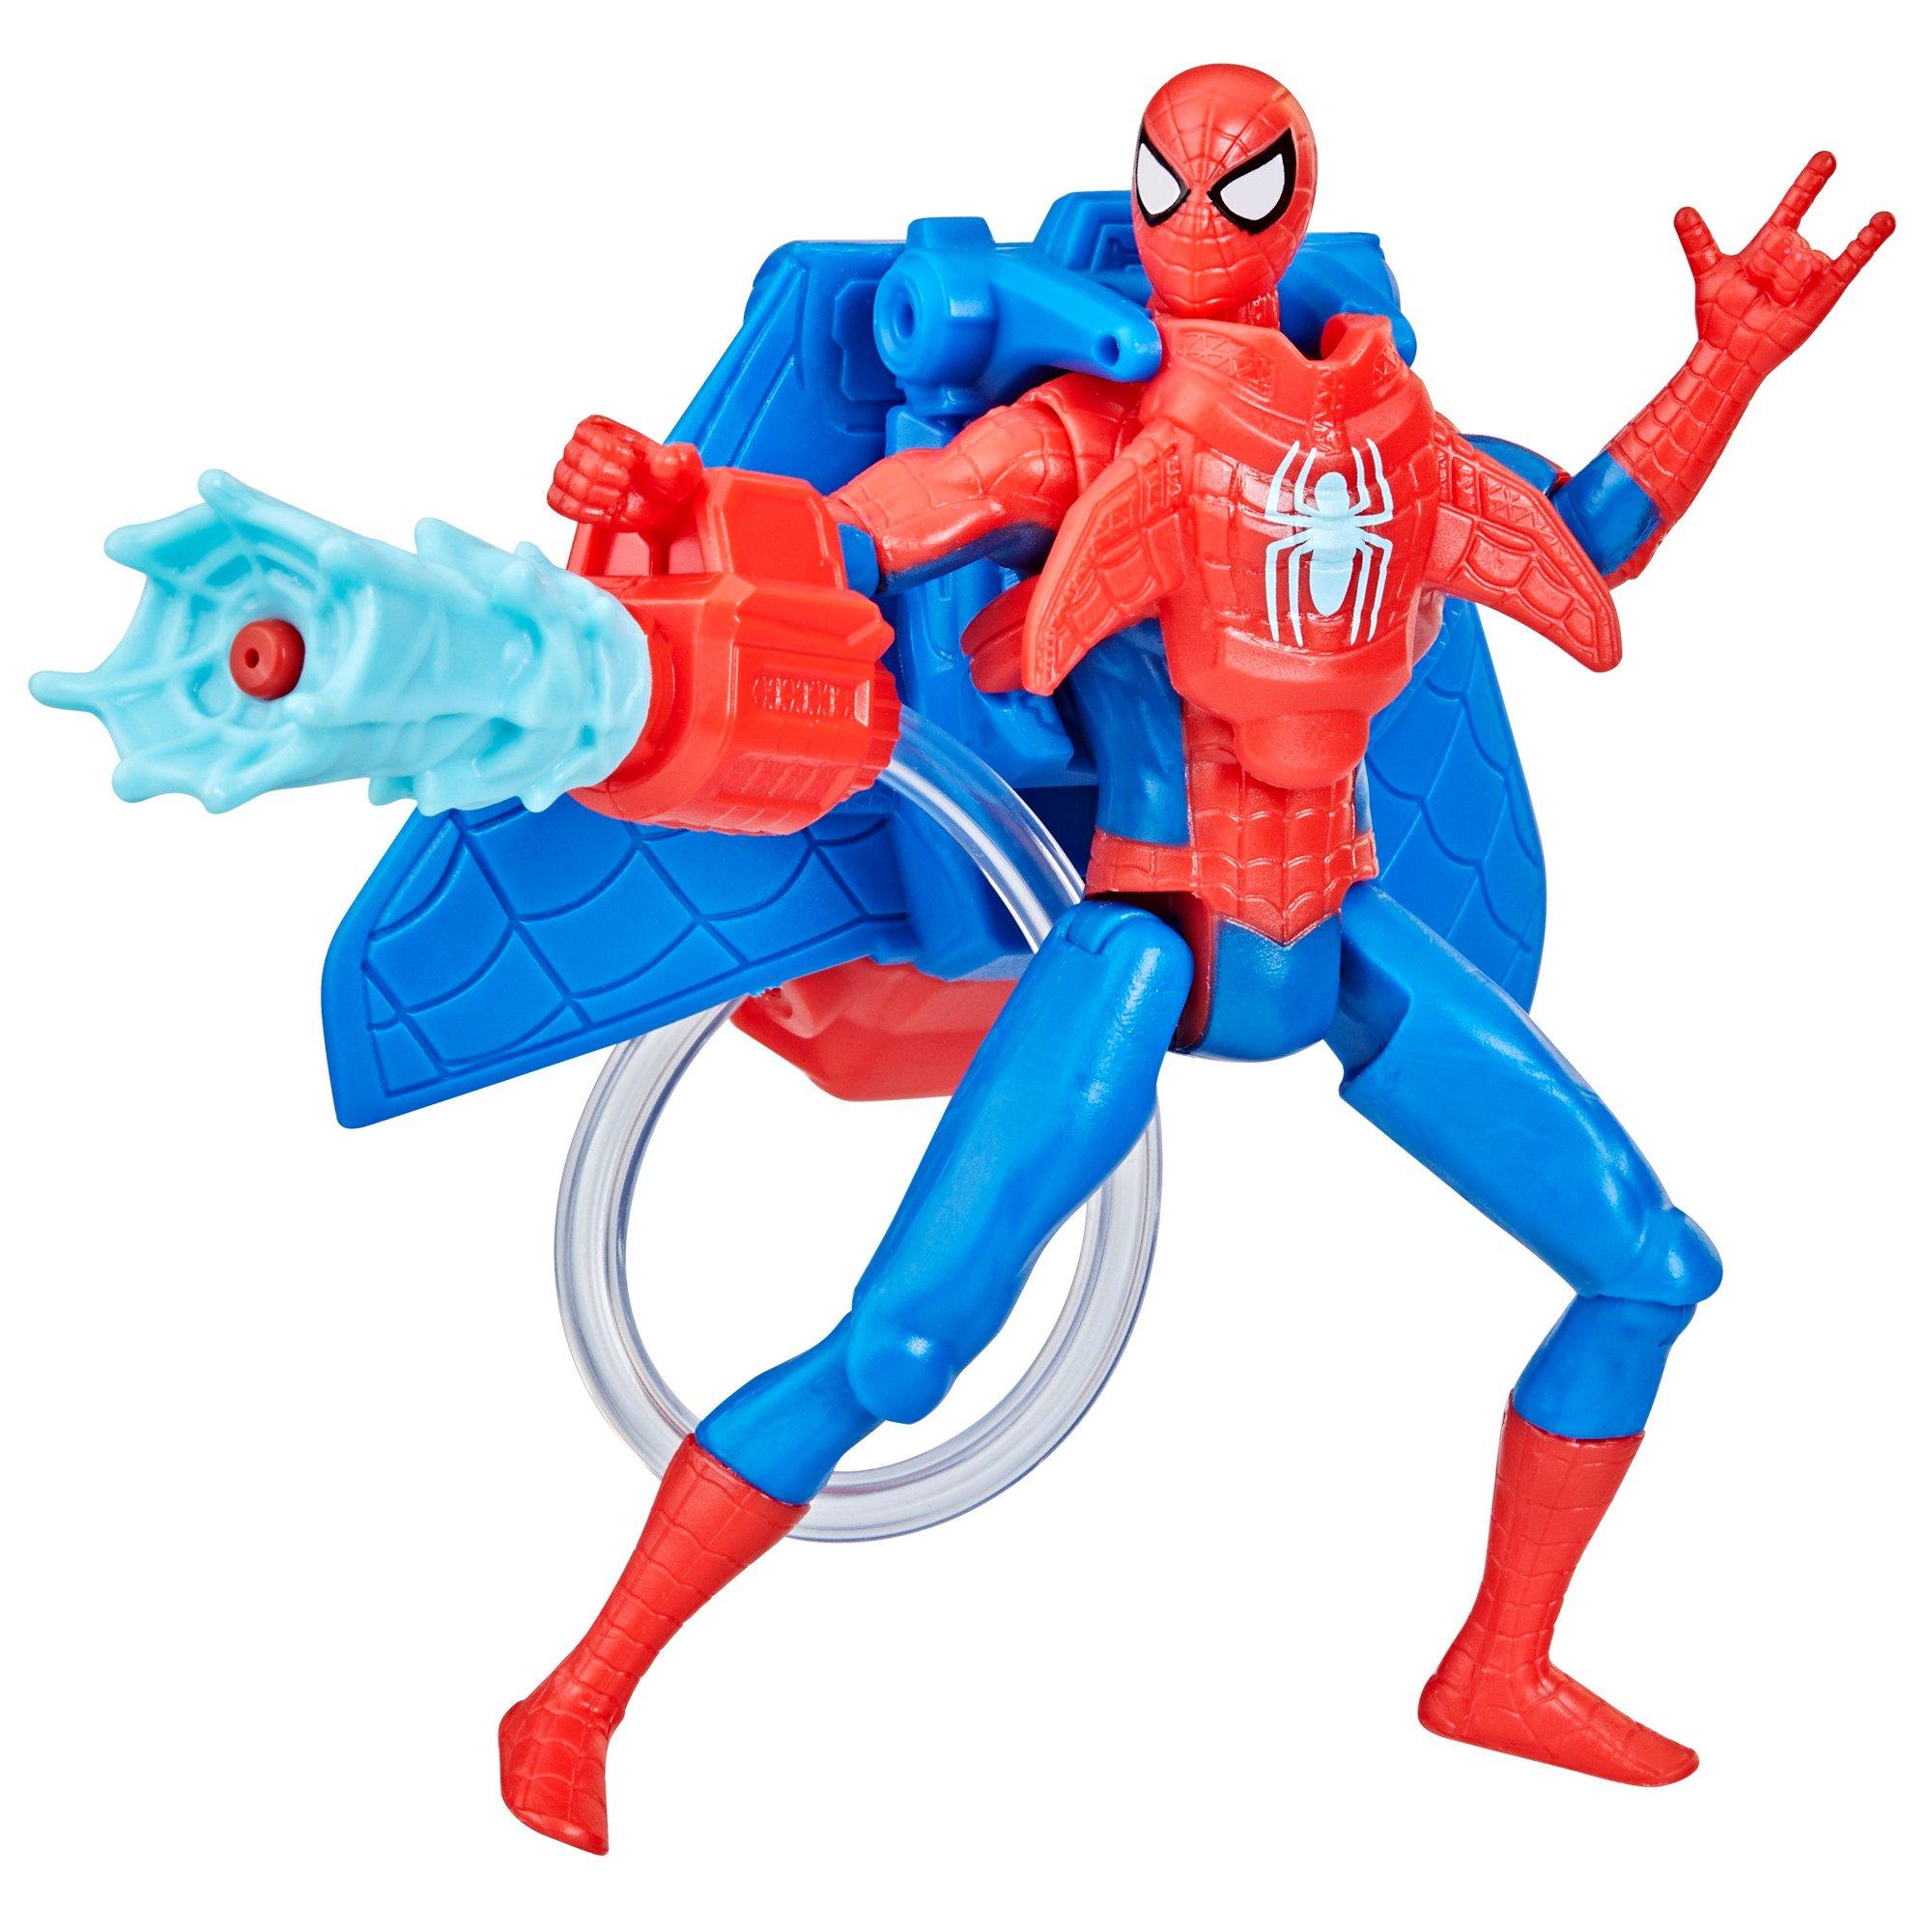 Spider-Man Toys in Spider-Man 